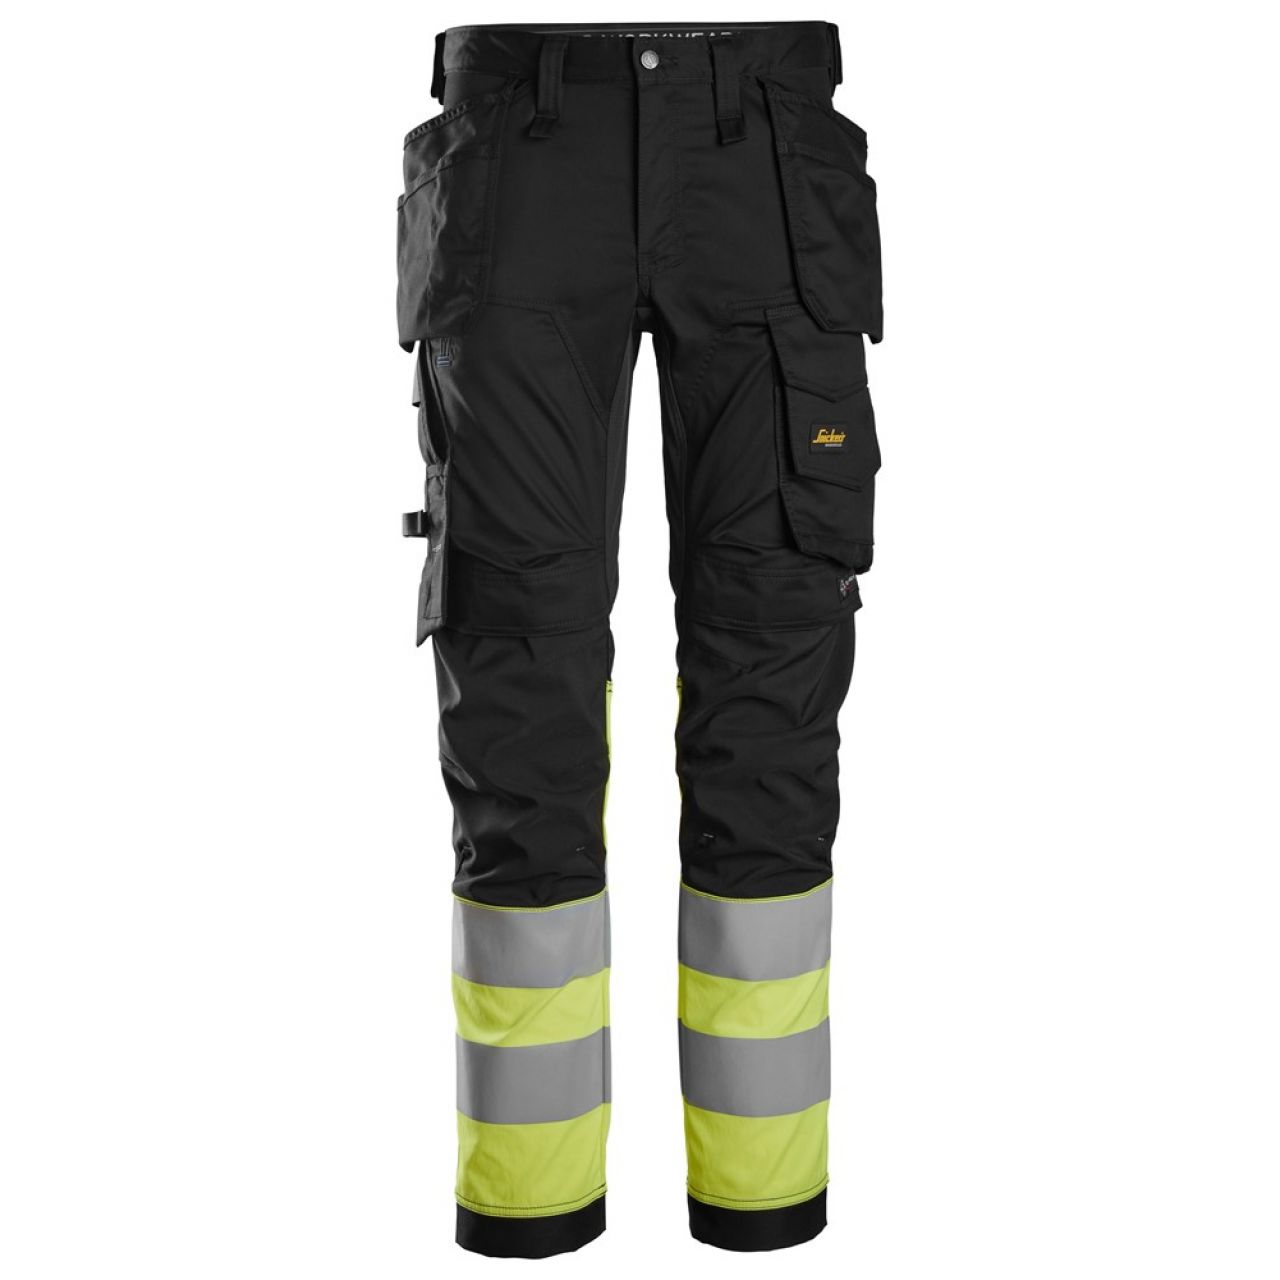 6234 Pantalones largos de trabajo elásticos de alta visibilidad clase 1 con bolsillos flotantes negro-amarillo talla 146